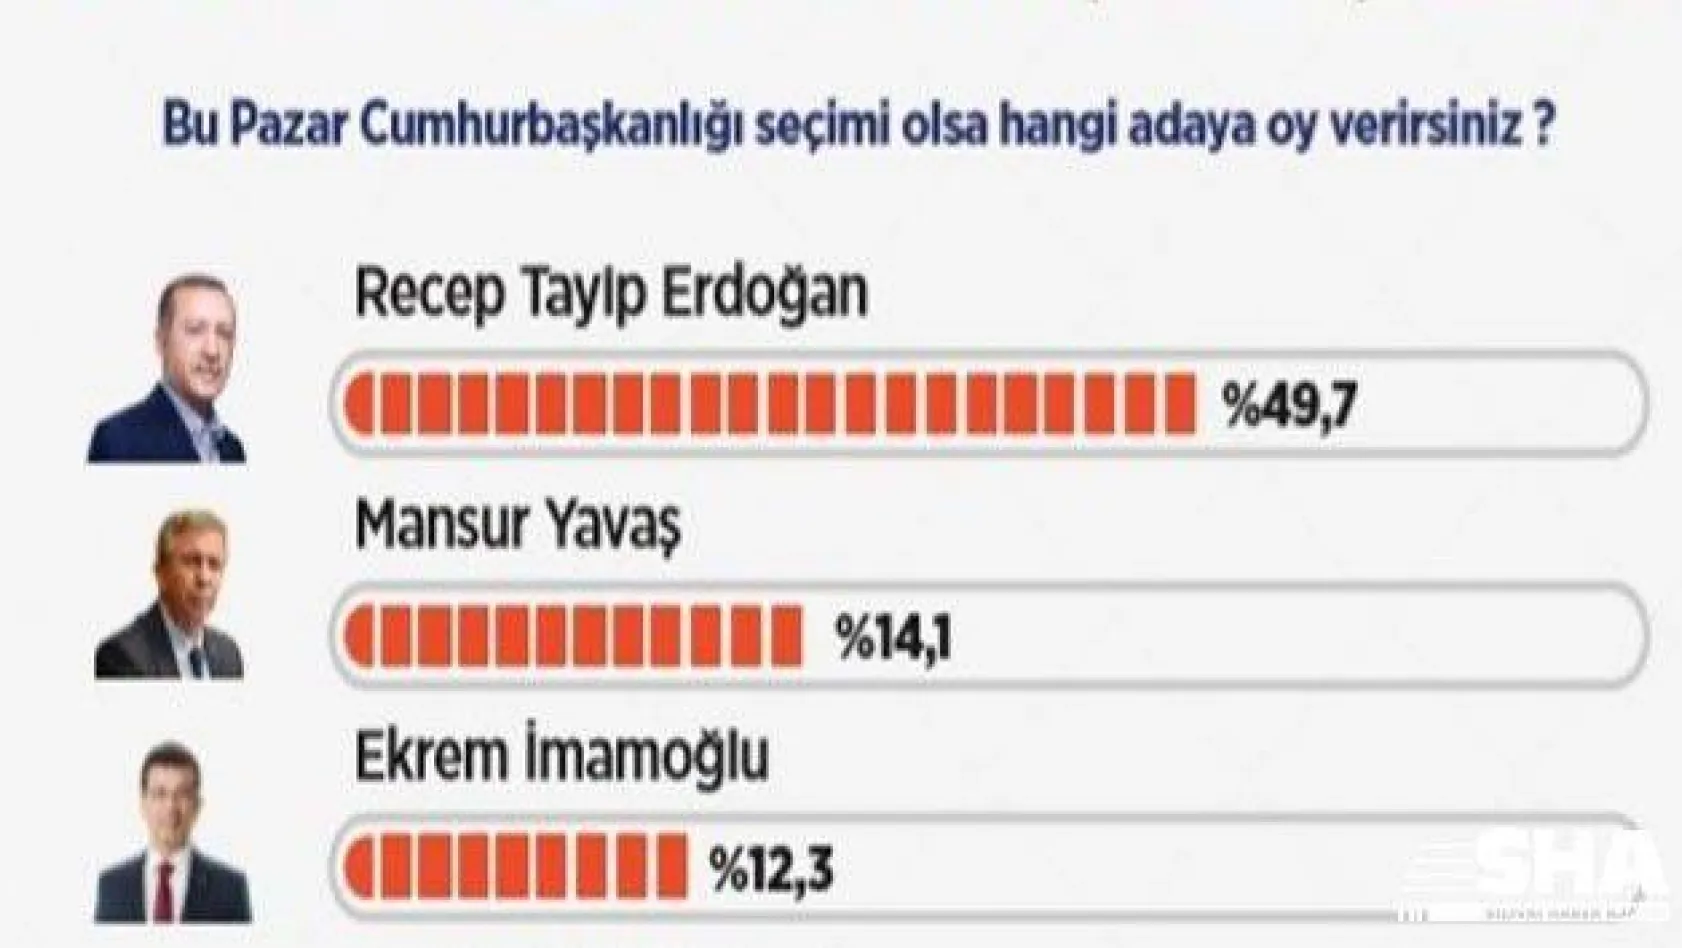 Yüzde 49,7 Cumhurbaşkanlığı için 'Erdoğan' dedi